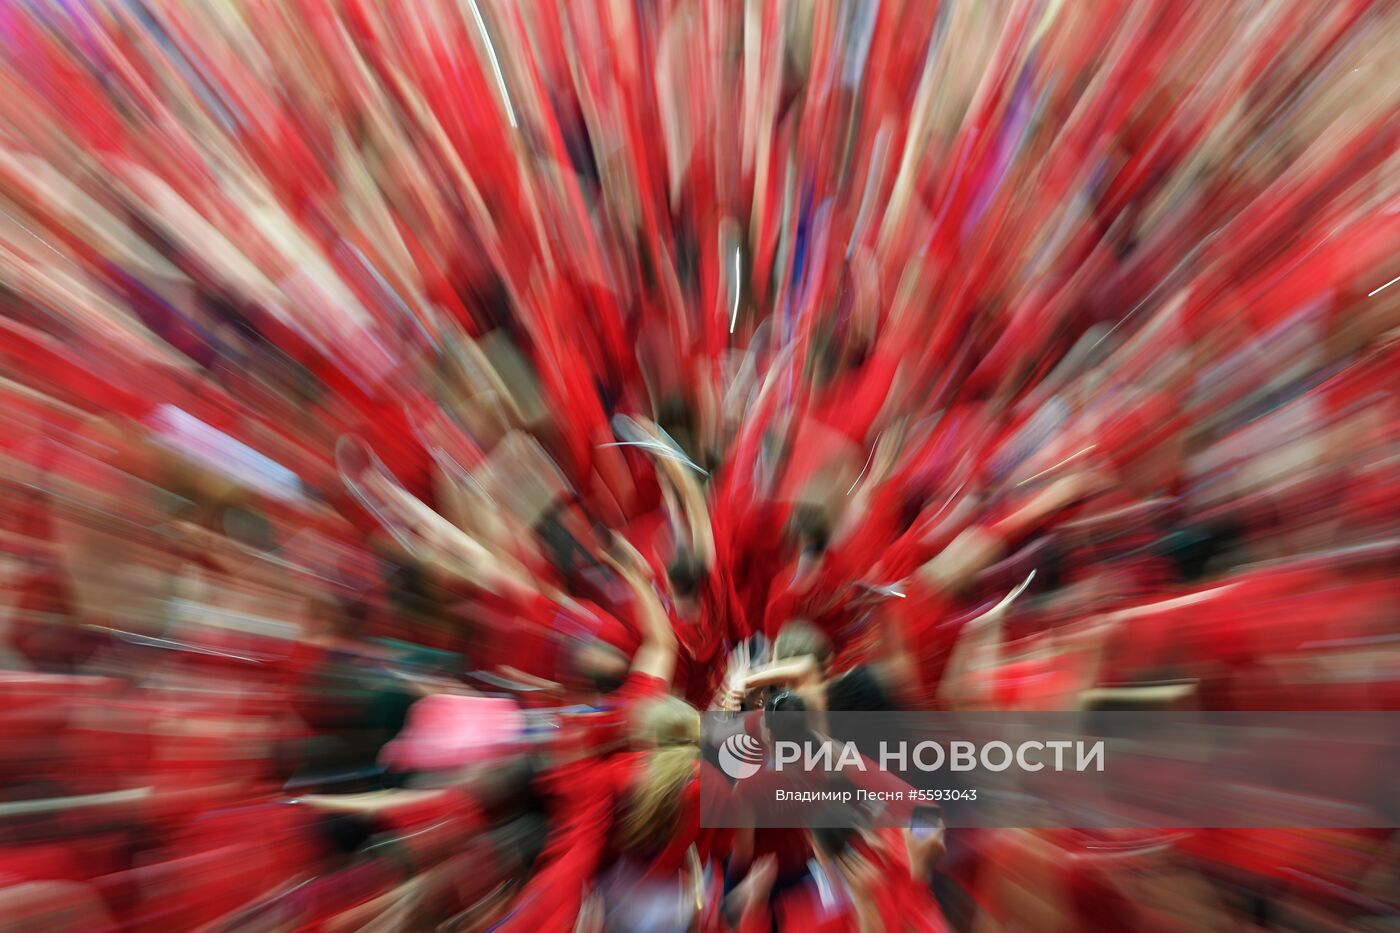 Прощание с волонтерами ЧМ-2018 по футболу на стадионе "Лужники"